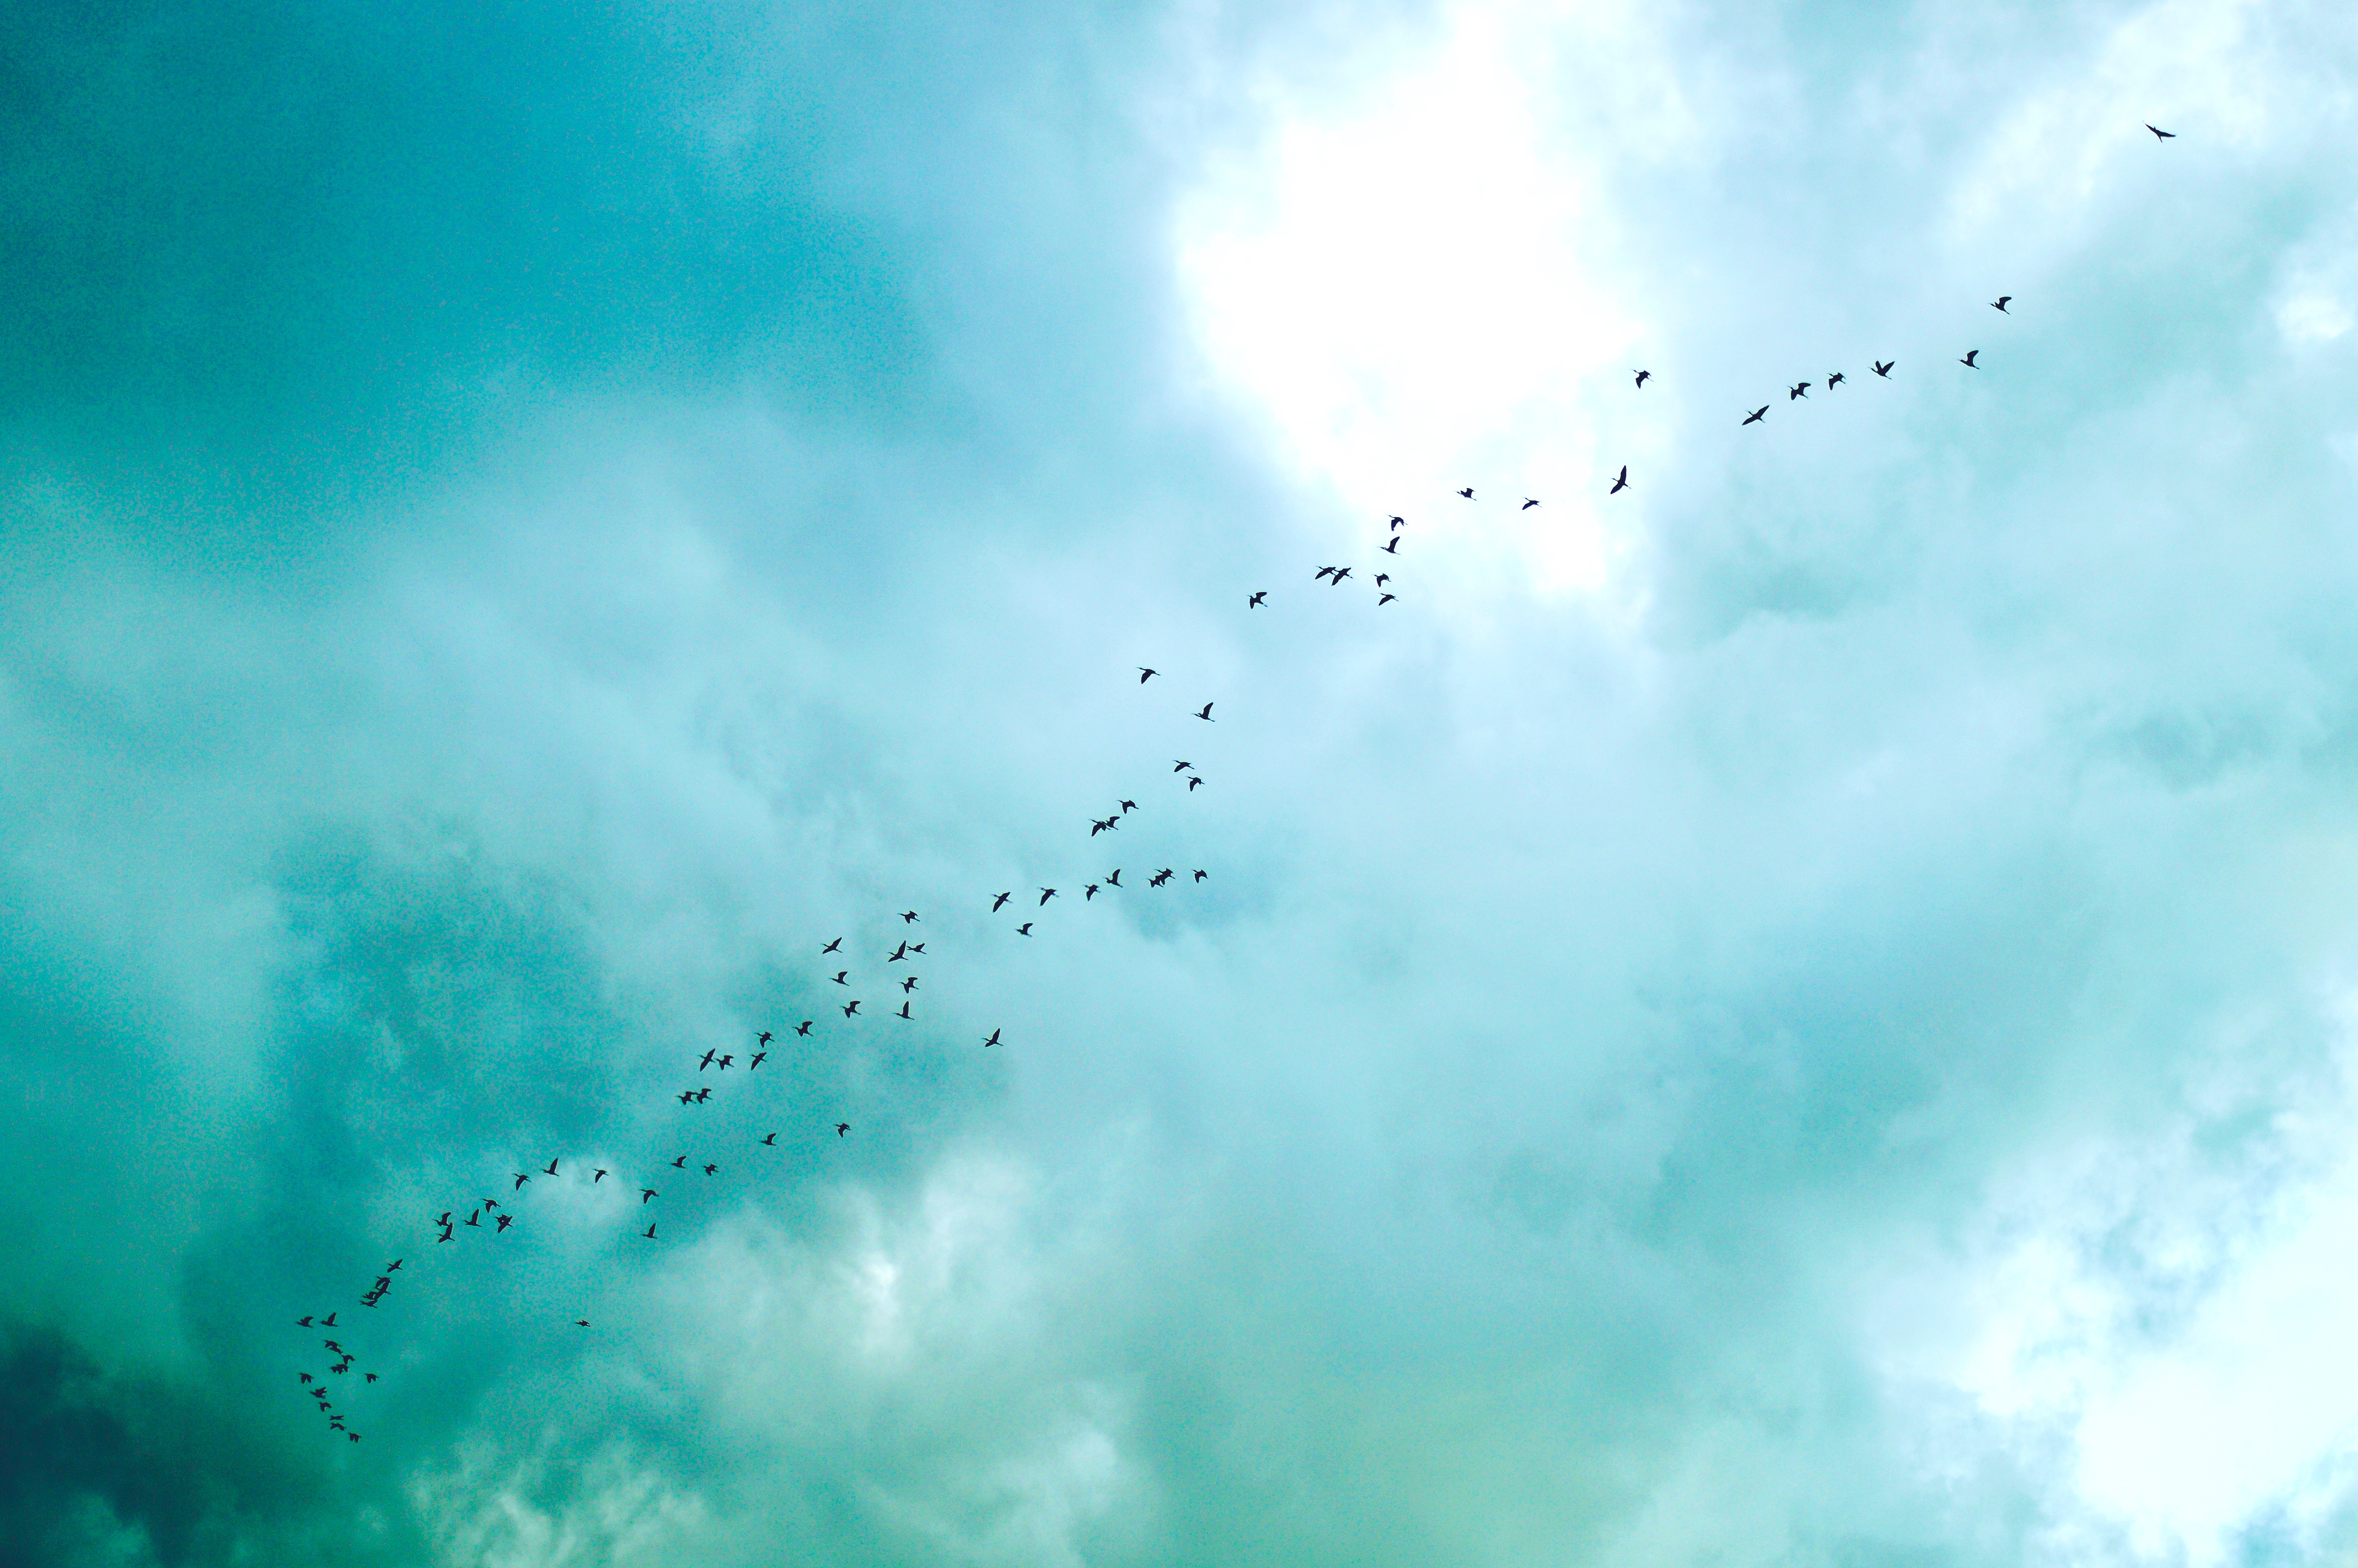 Birds in the sky photo